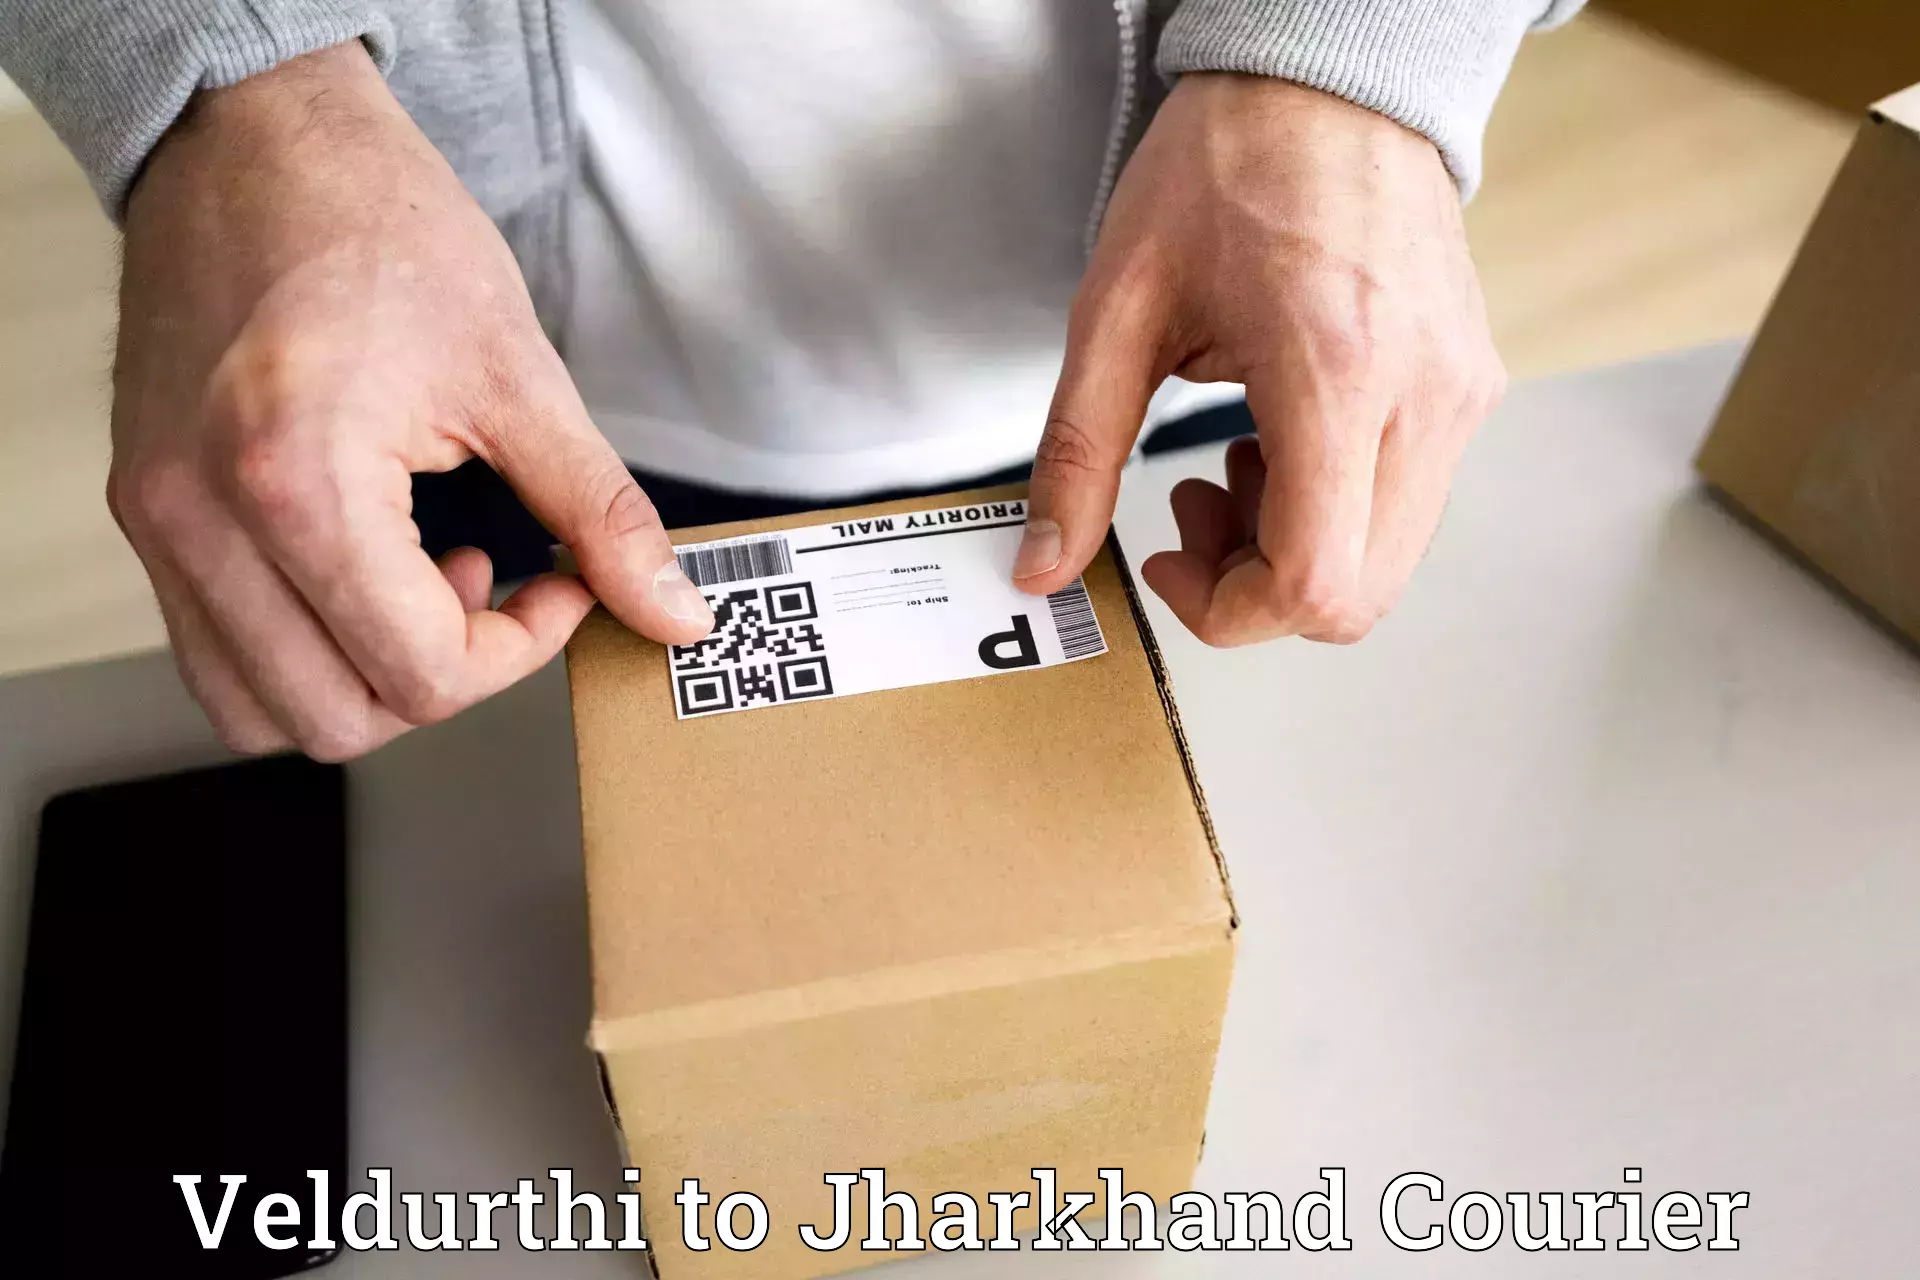 Modern courier technology Veldurthi to Jamshedpur